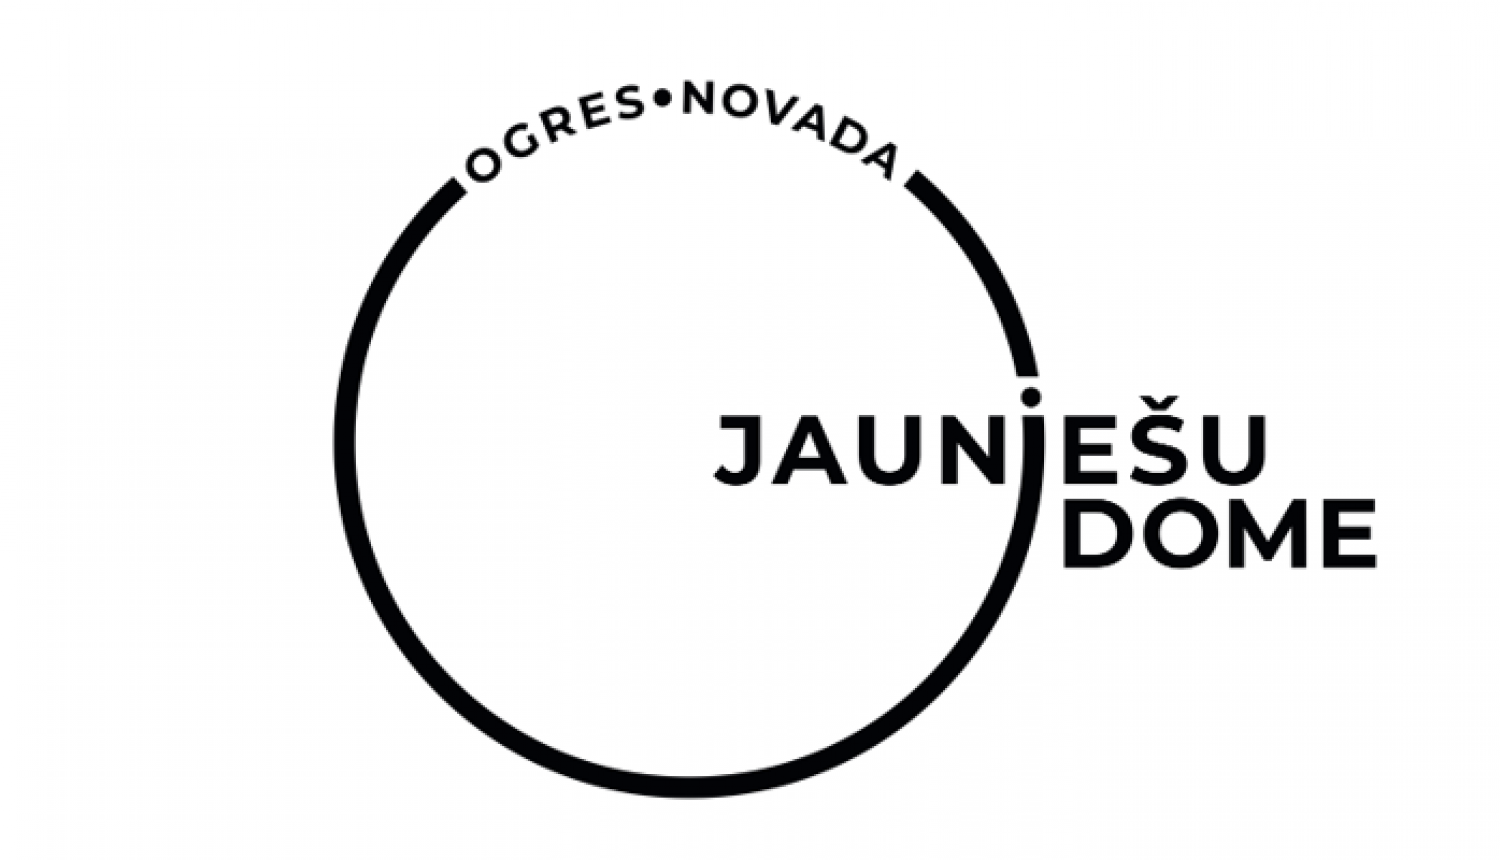 Jauniesu dome logo